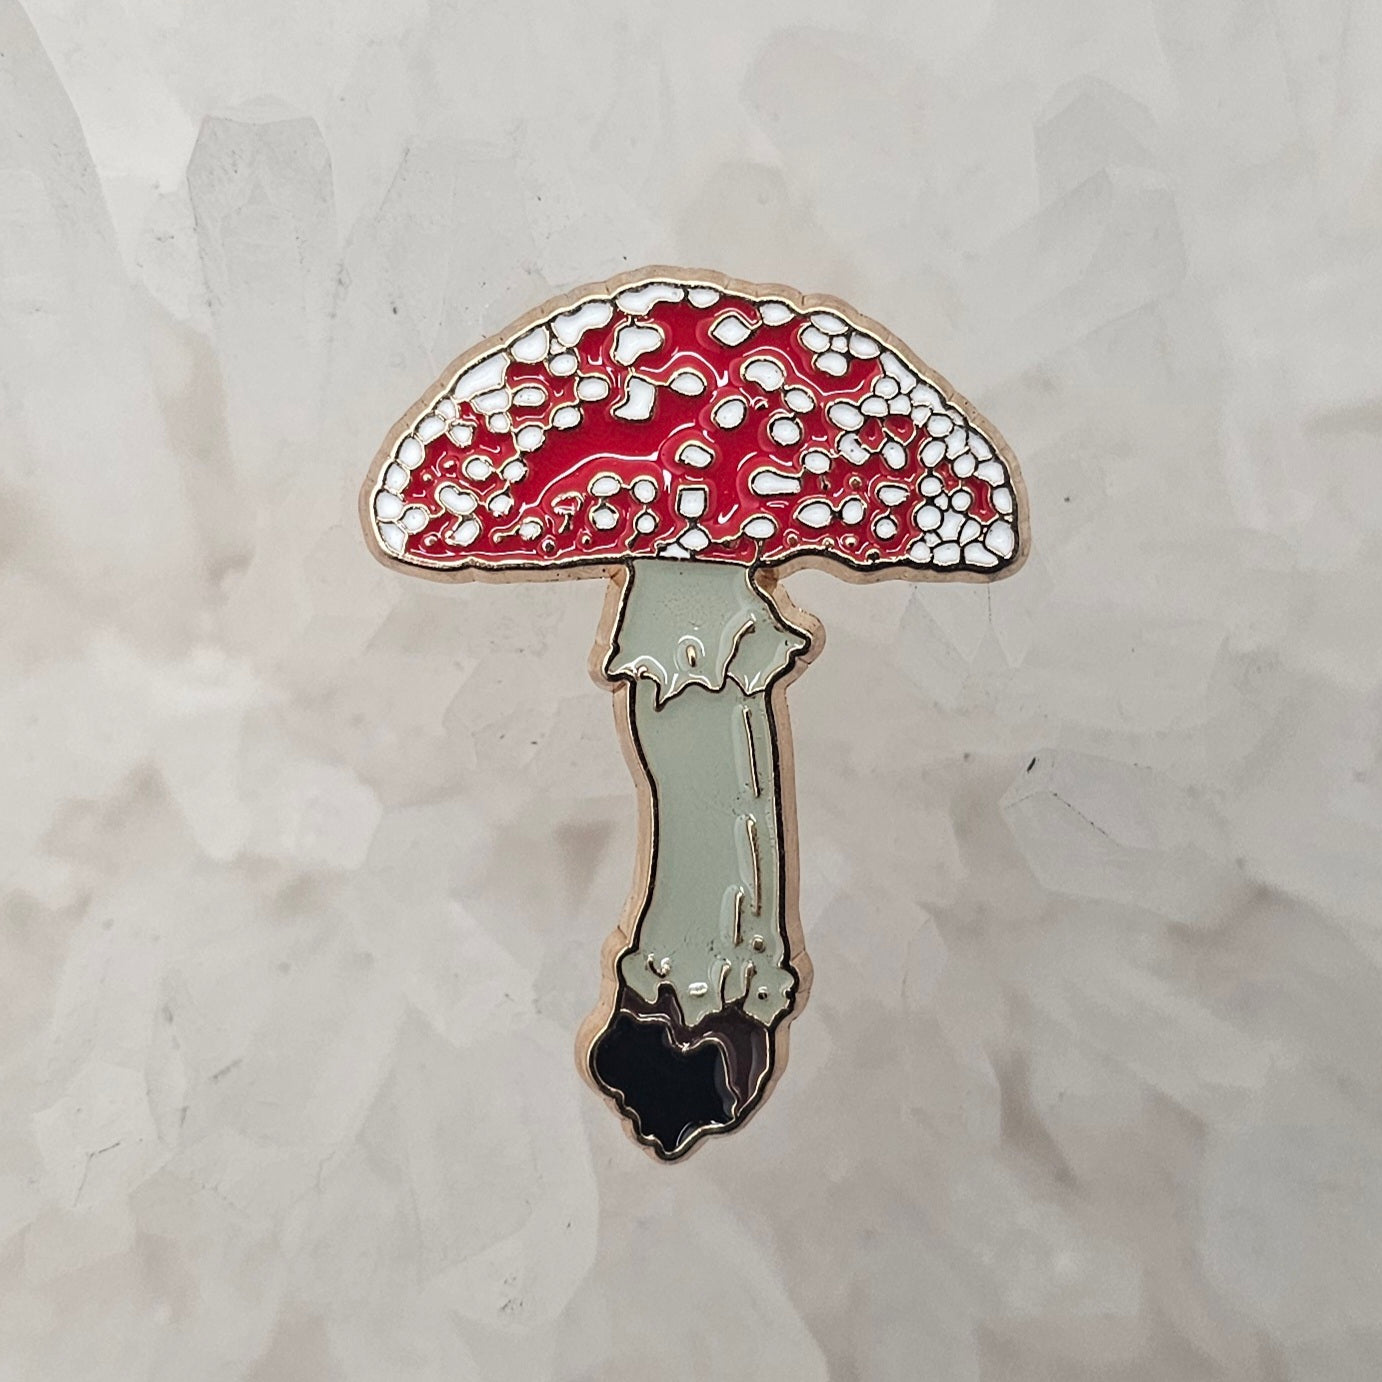 Psychedelic Mushroom Magic Amonita V2 Shroom Enamel Pins Hat Pins Lapel Pin Brooch Badge Festival Pin